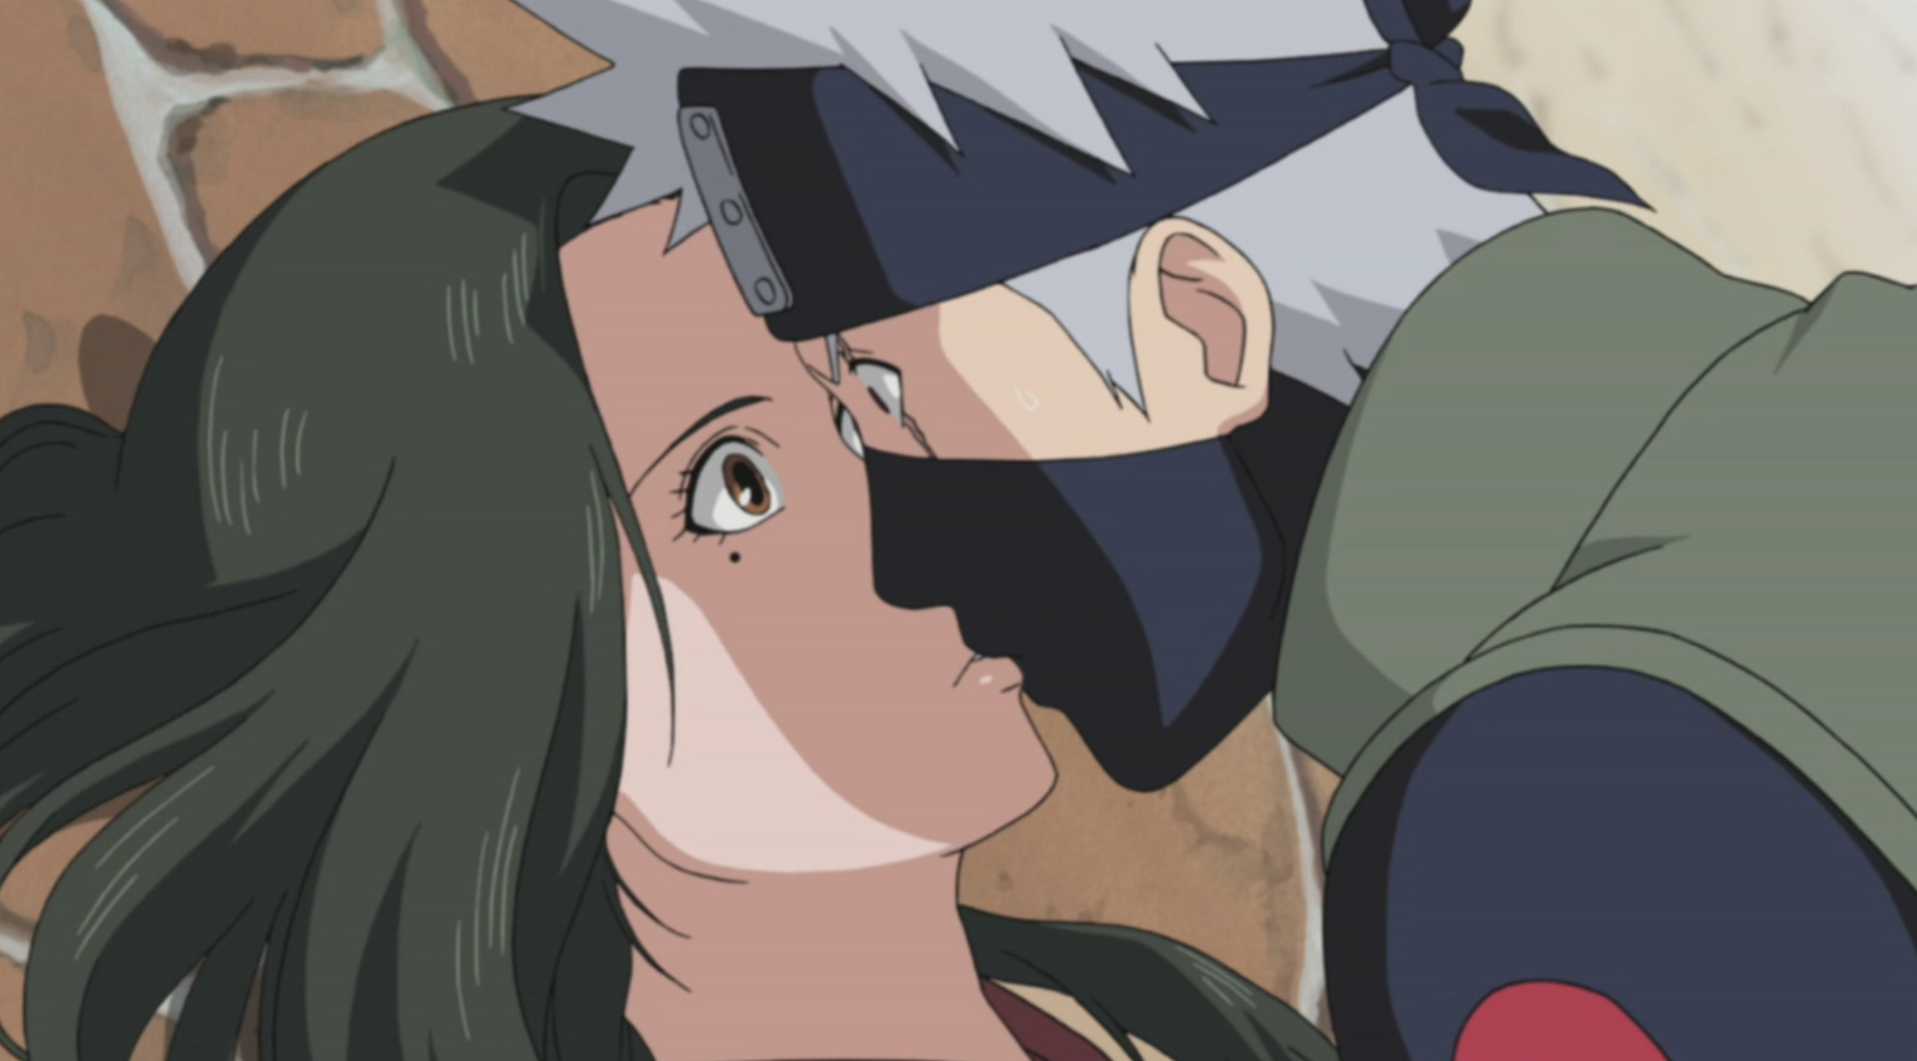 Naruto Shippuden Episode 1 English dub  Verry good  By Kiss Anime   Facebook